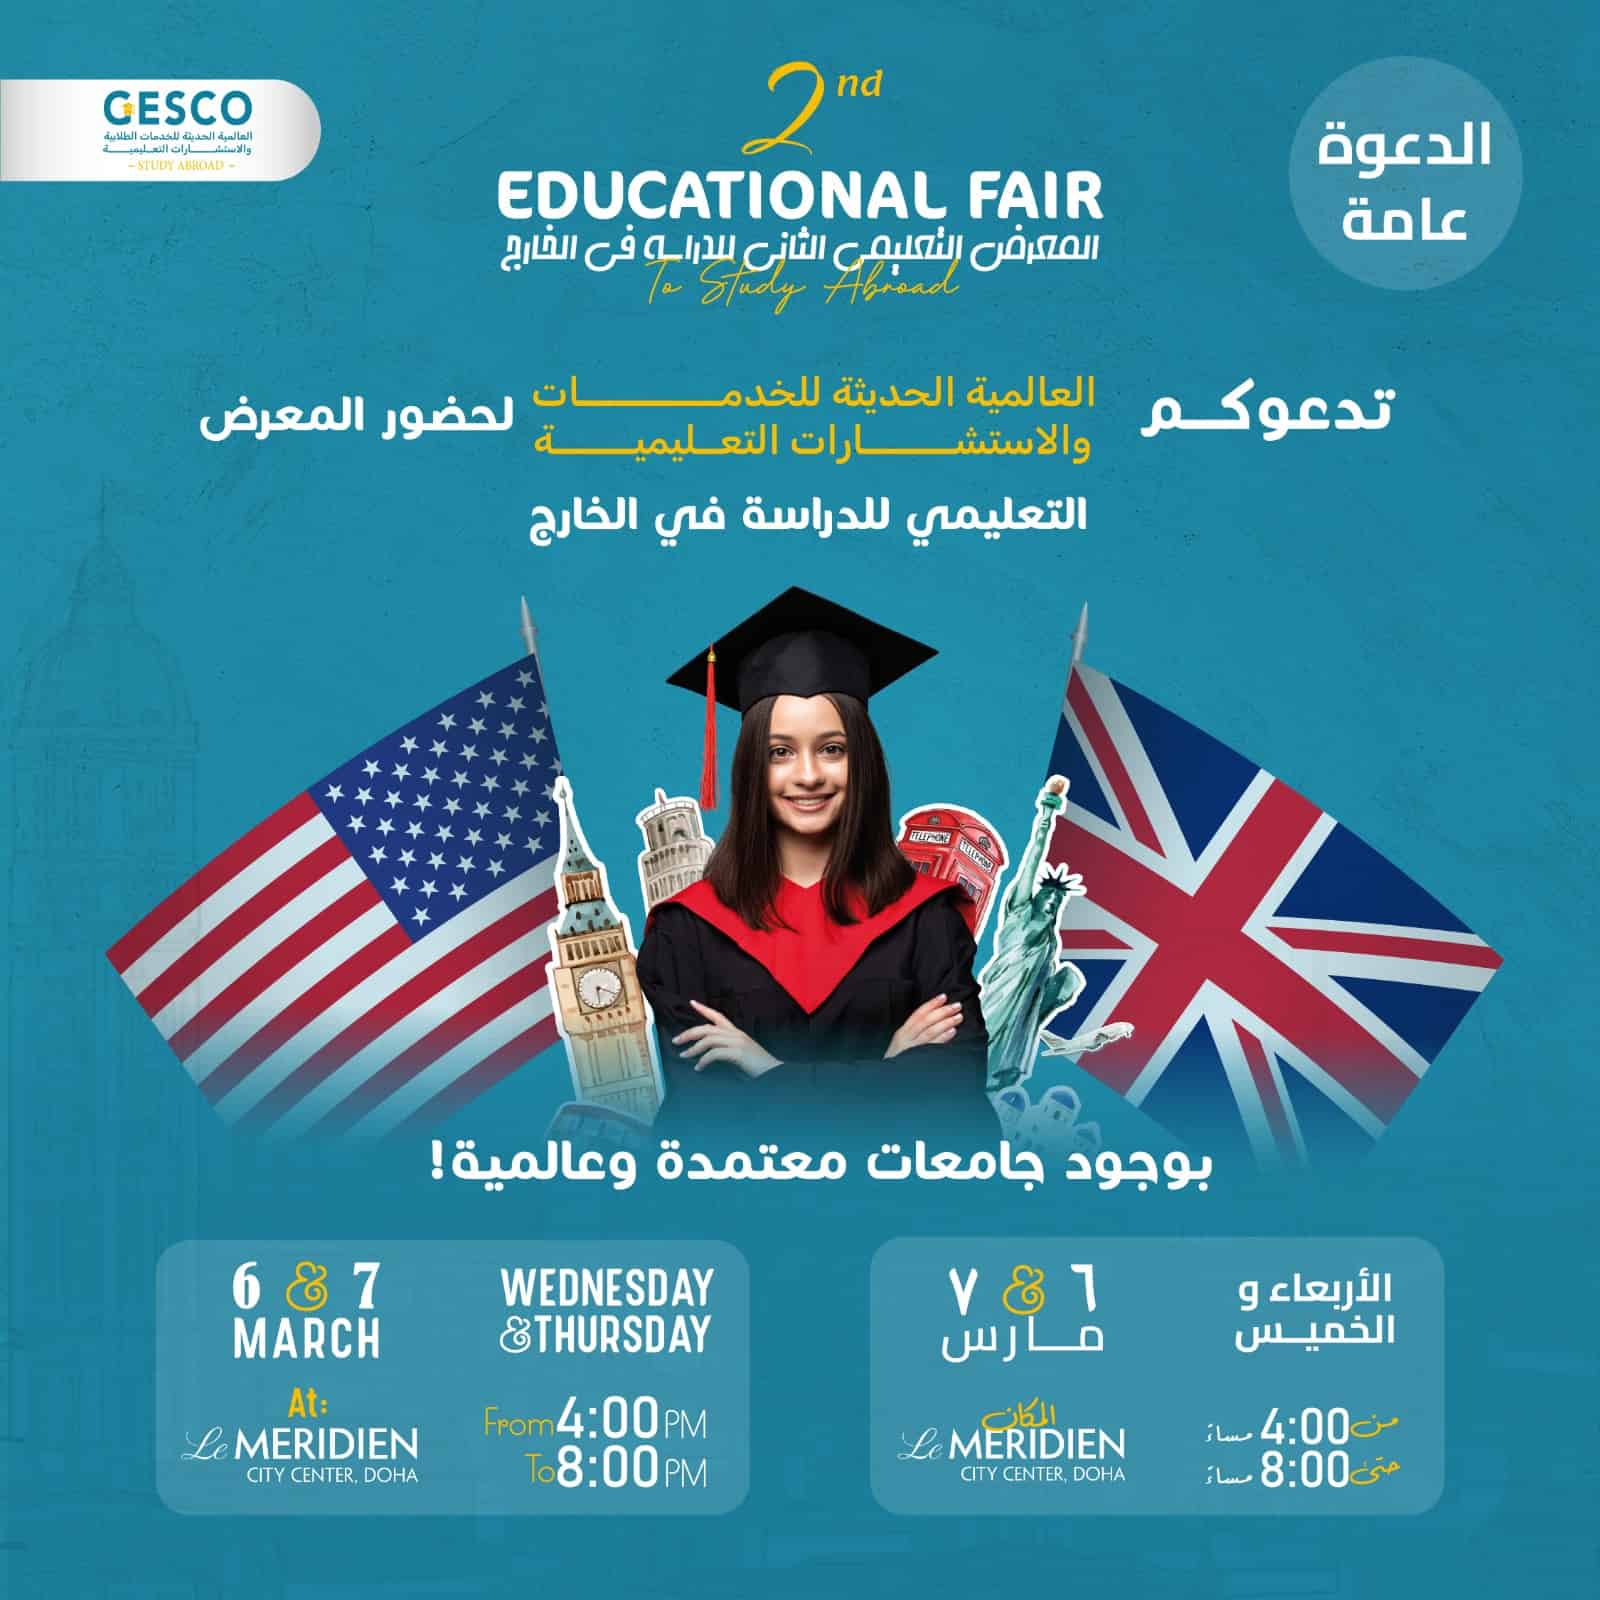 GESCO’s 2nd Educational Fair in Qatar